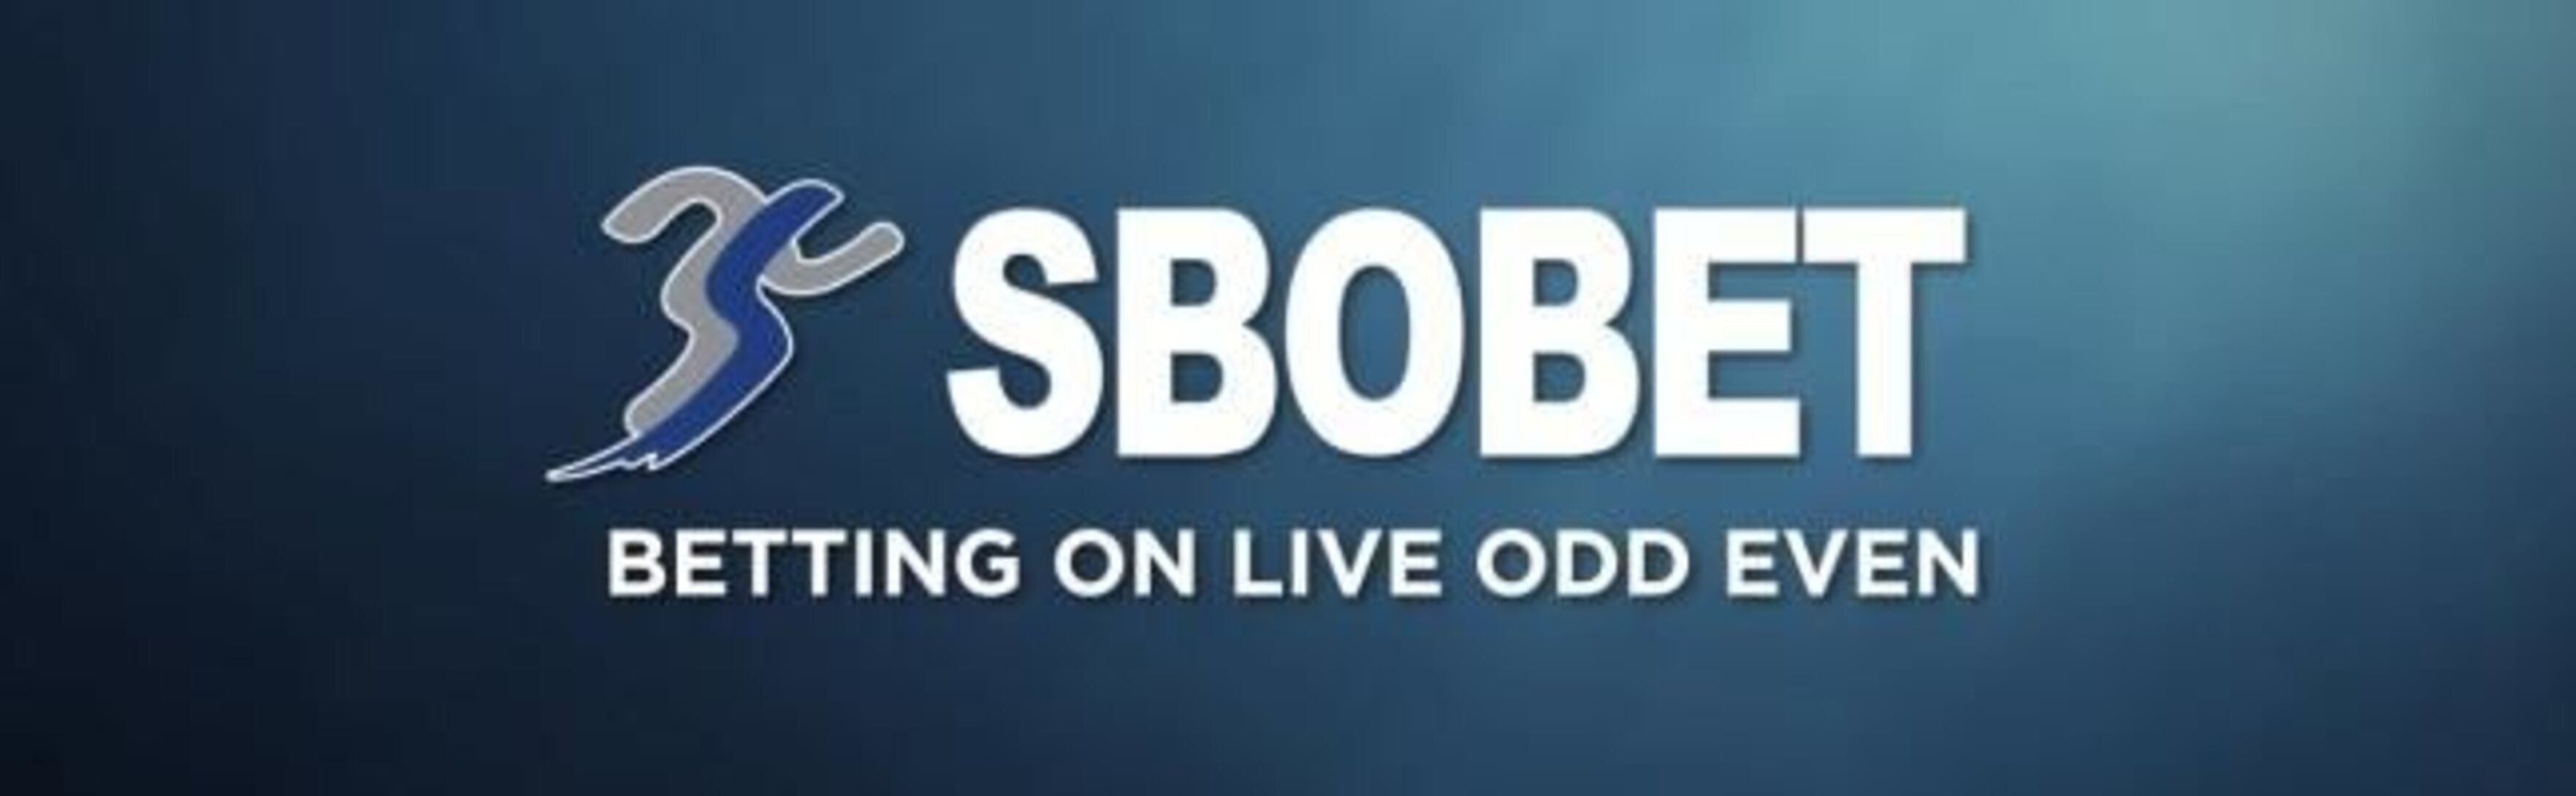 Sbobet дарит 100% до 200 евро на первый депозит 